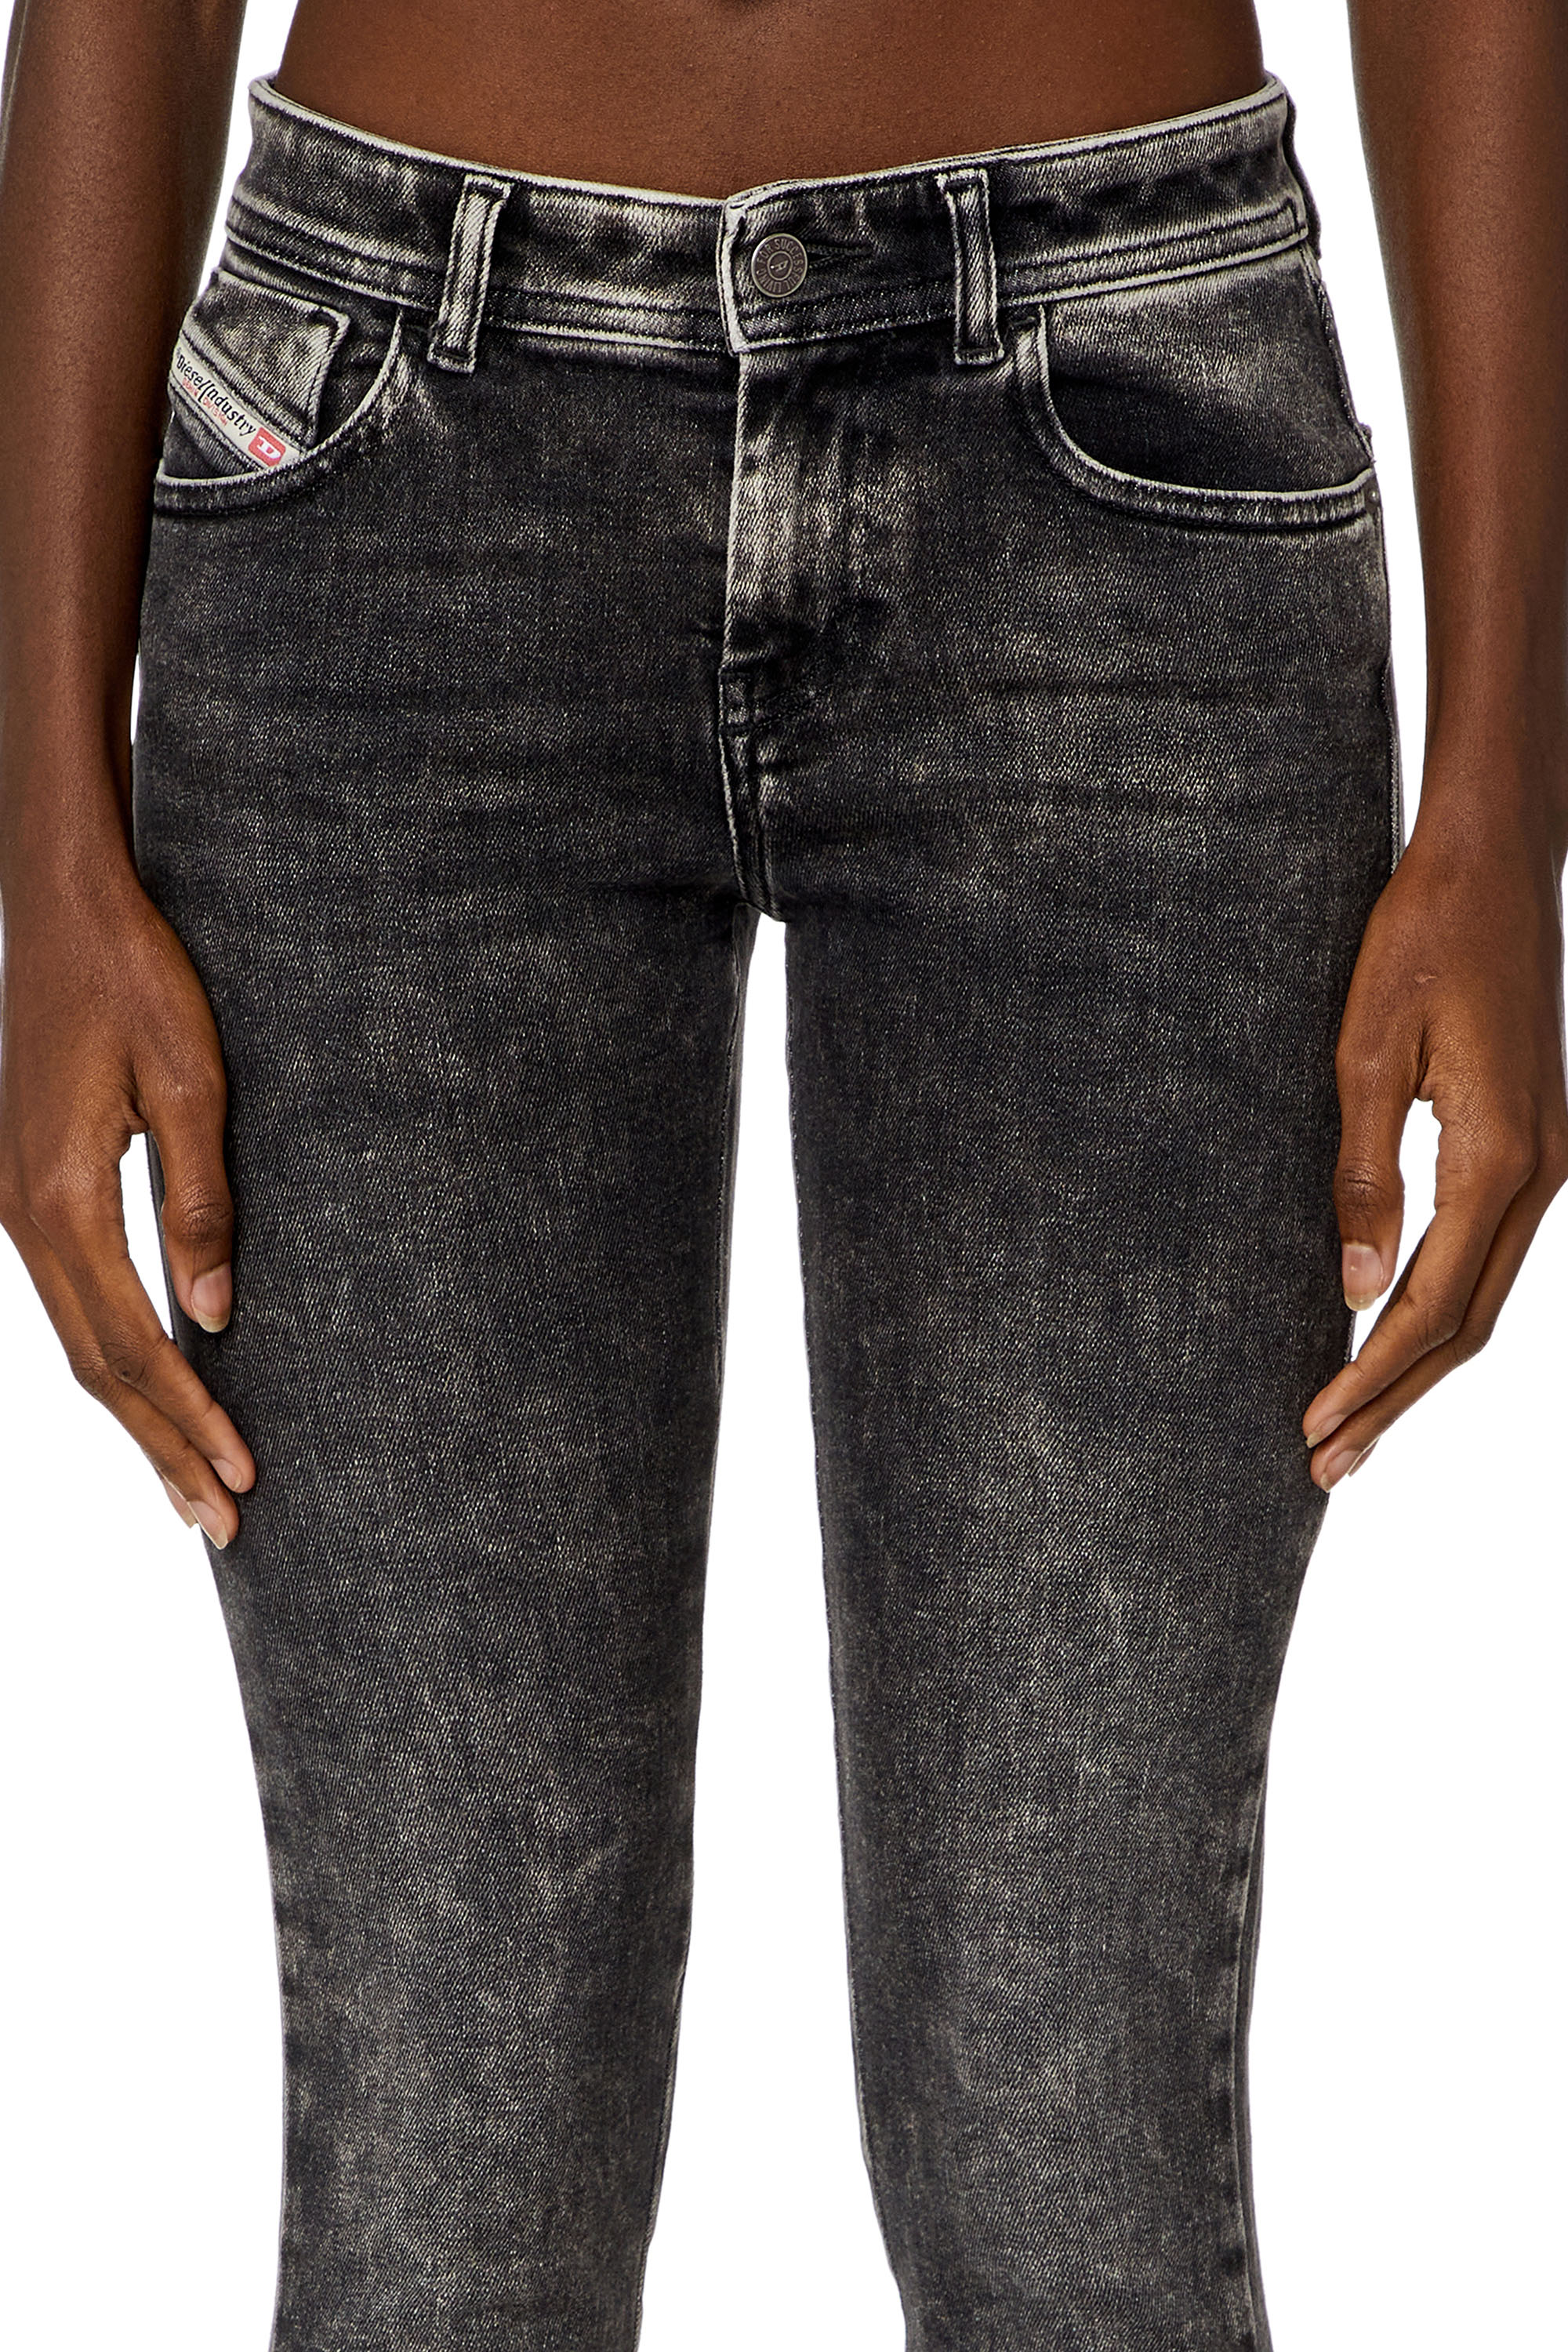 Diesel - Super skinny Jeans 2017 Slandy 09H88, Black/Dark grey - Image 3